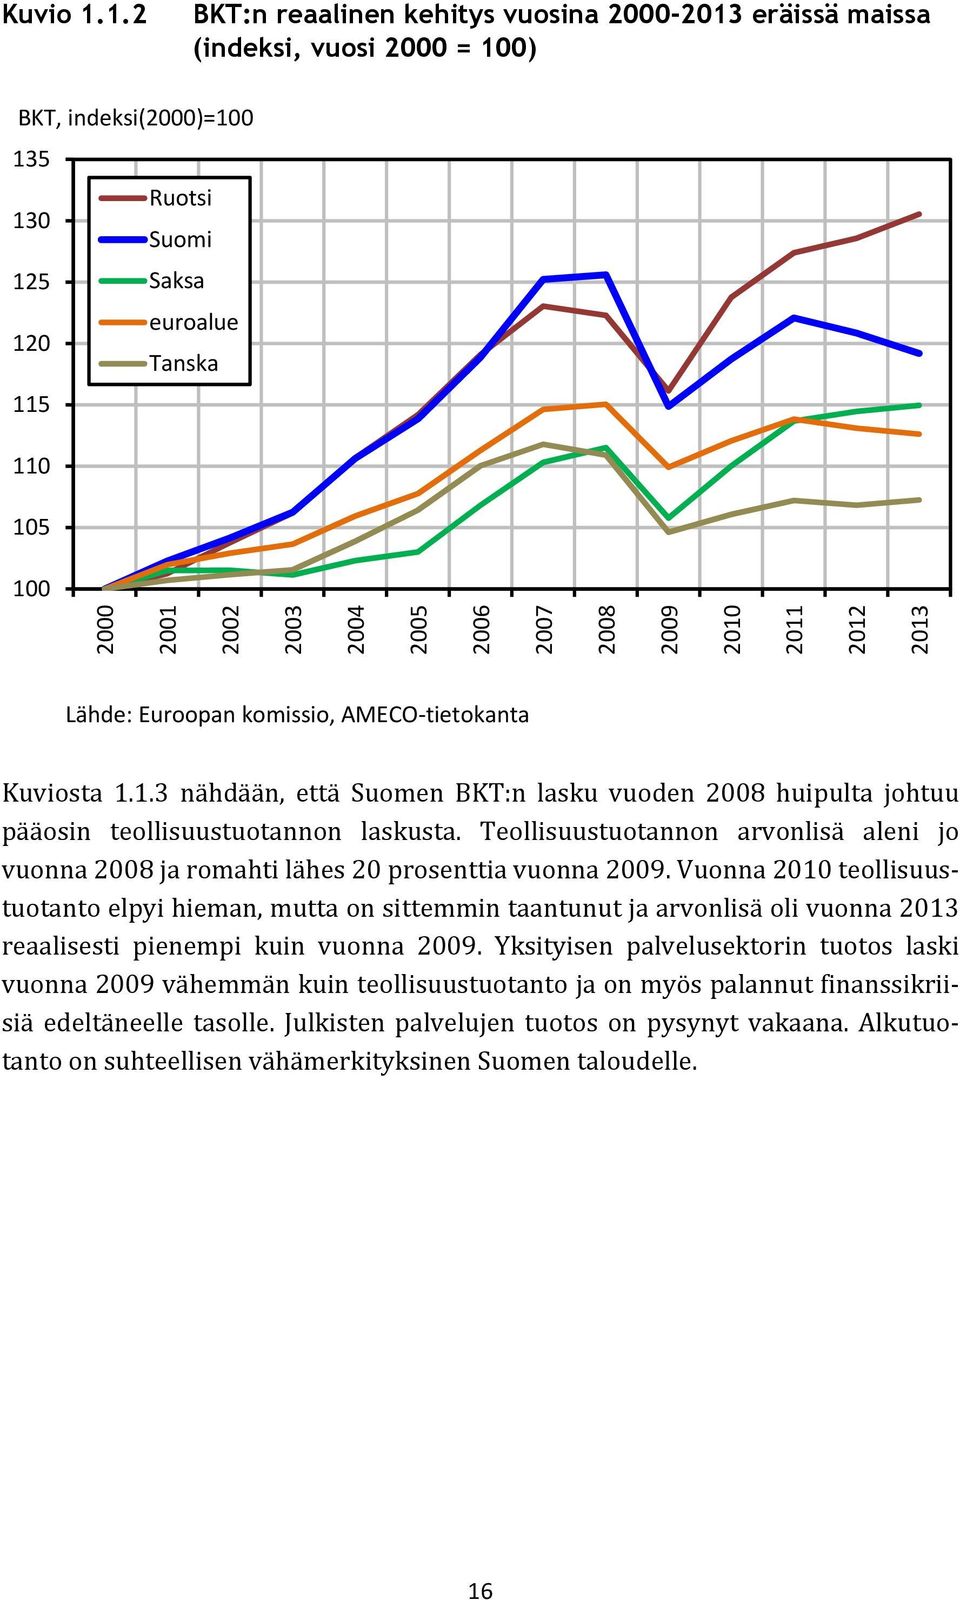 2004 2005 2006 2007 2008 2009 2010 2011 2012 2013 Lähde: Euroopan komissio, AMECO-tietokanta Kuviosta 1.1.3 nähdään, että Suomen BKT:n lasku vuoden 2008 huipulta johtuu pääosin teollisuustuotannon laskusta.